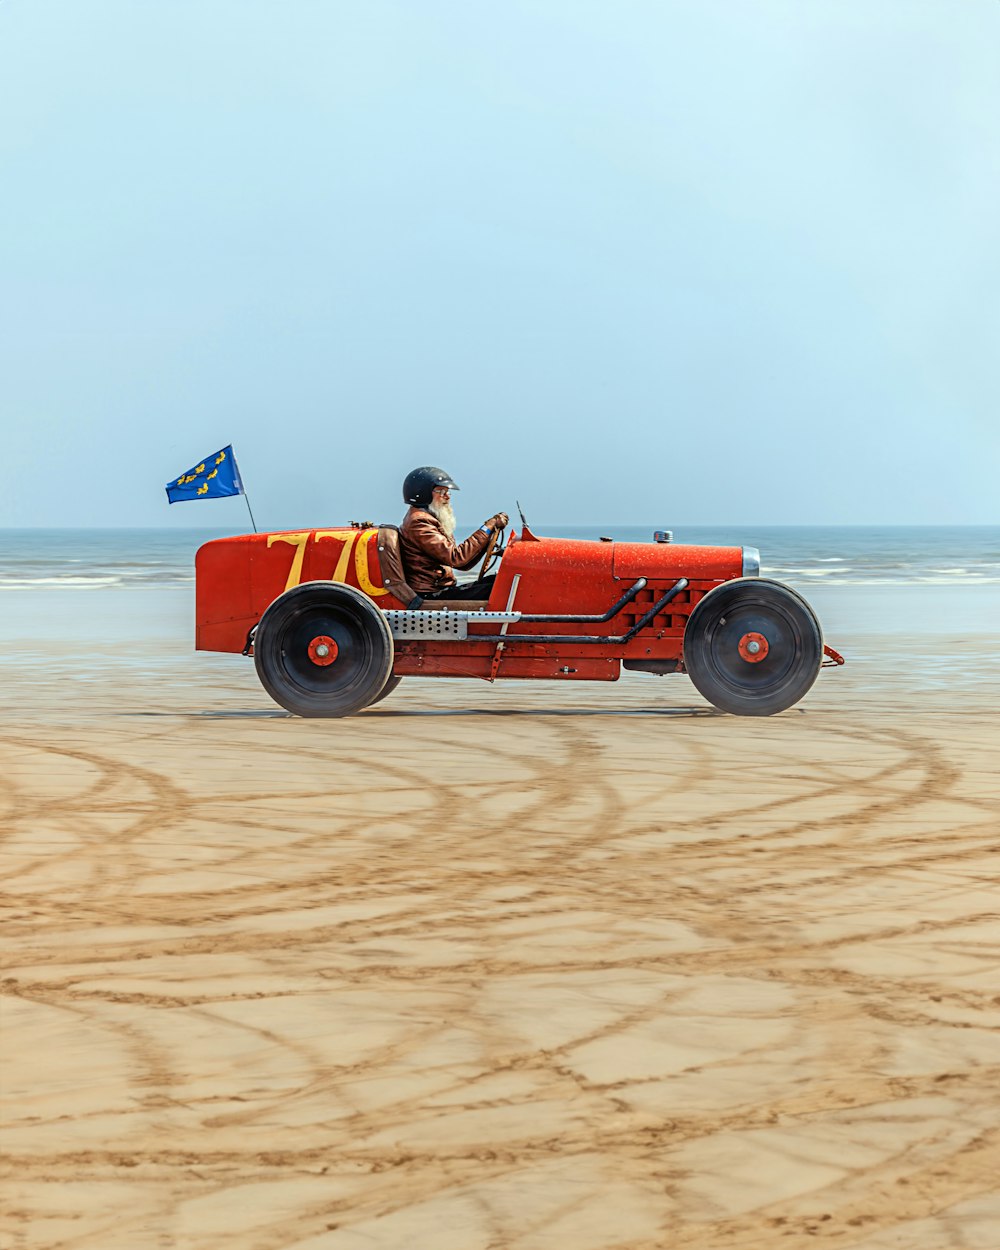 a man driving a red car on a sandy beach